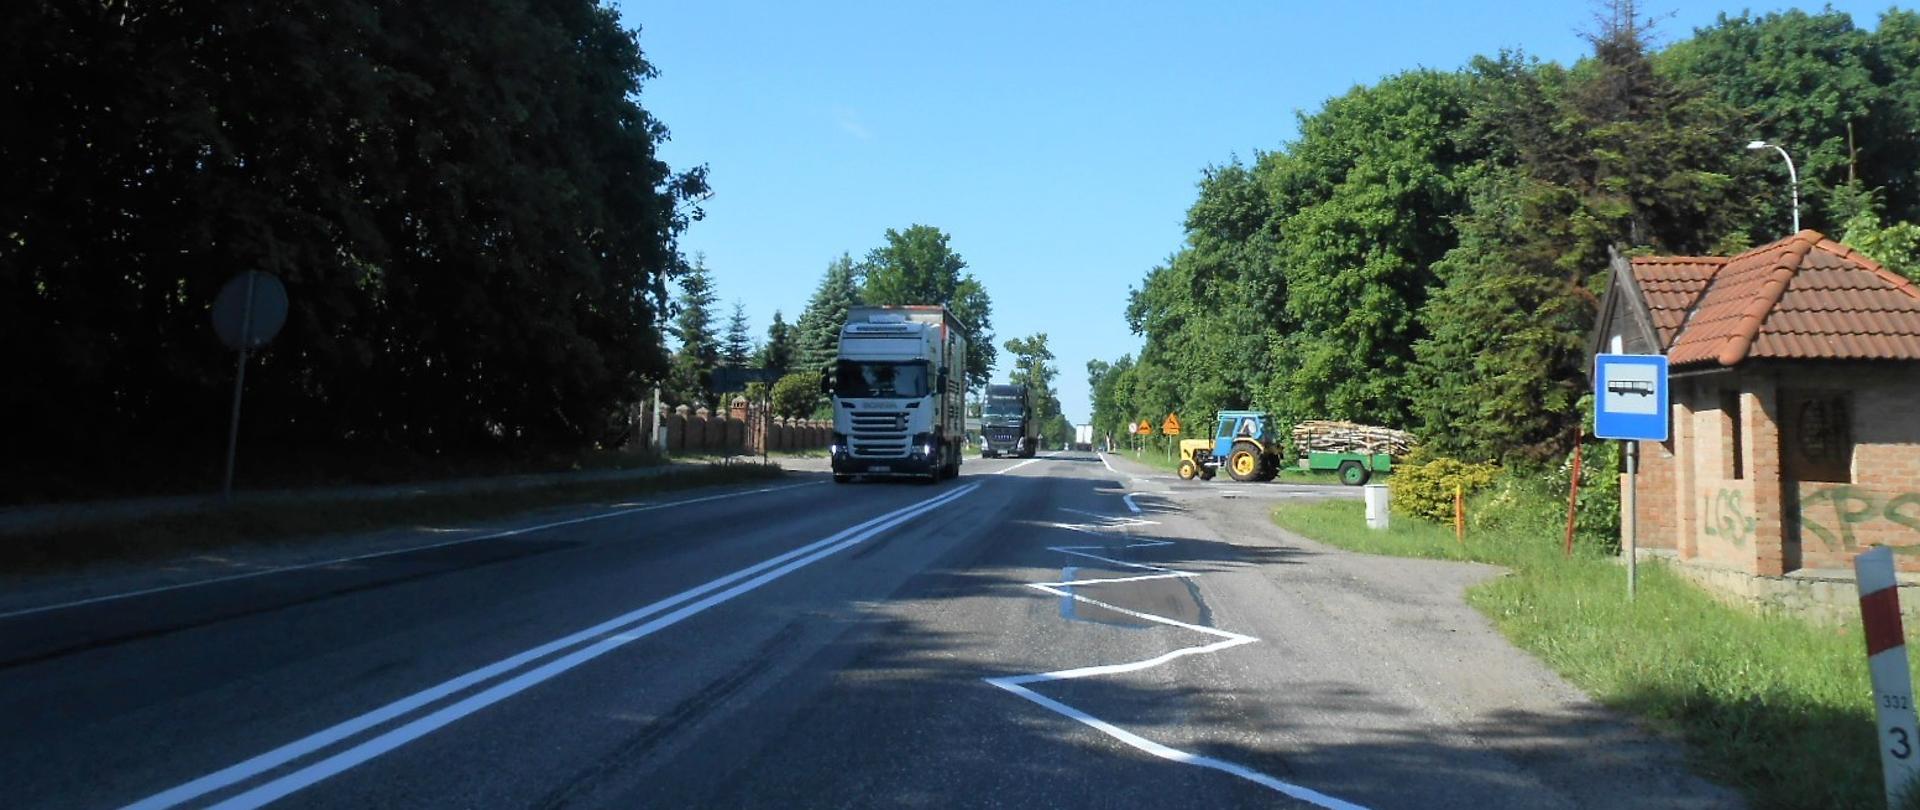 Zdjęcie przedstawia drogę krajową nr 22 w Swarożynie z jadącymi pojazdami. Na poboczu po prawej stronie widać przystanek komunikacji autobusowej pozbawiony zatoki autobusowej, a na dalszym planie ciągnik włączający się do ruchu z drogi podporządkowanej.